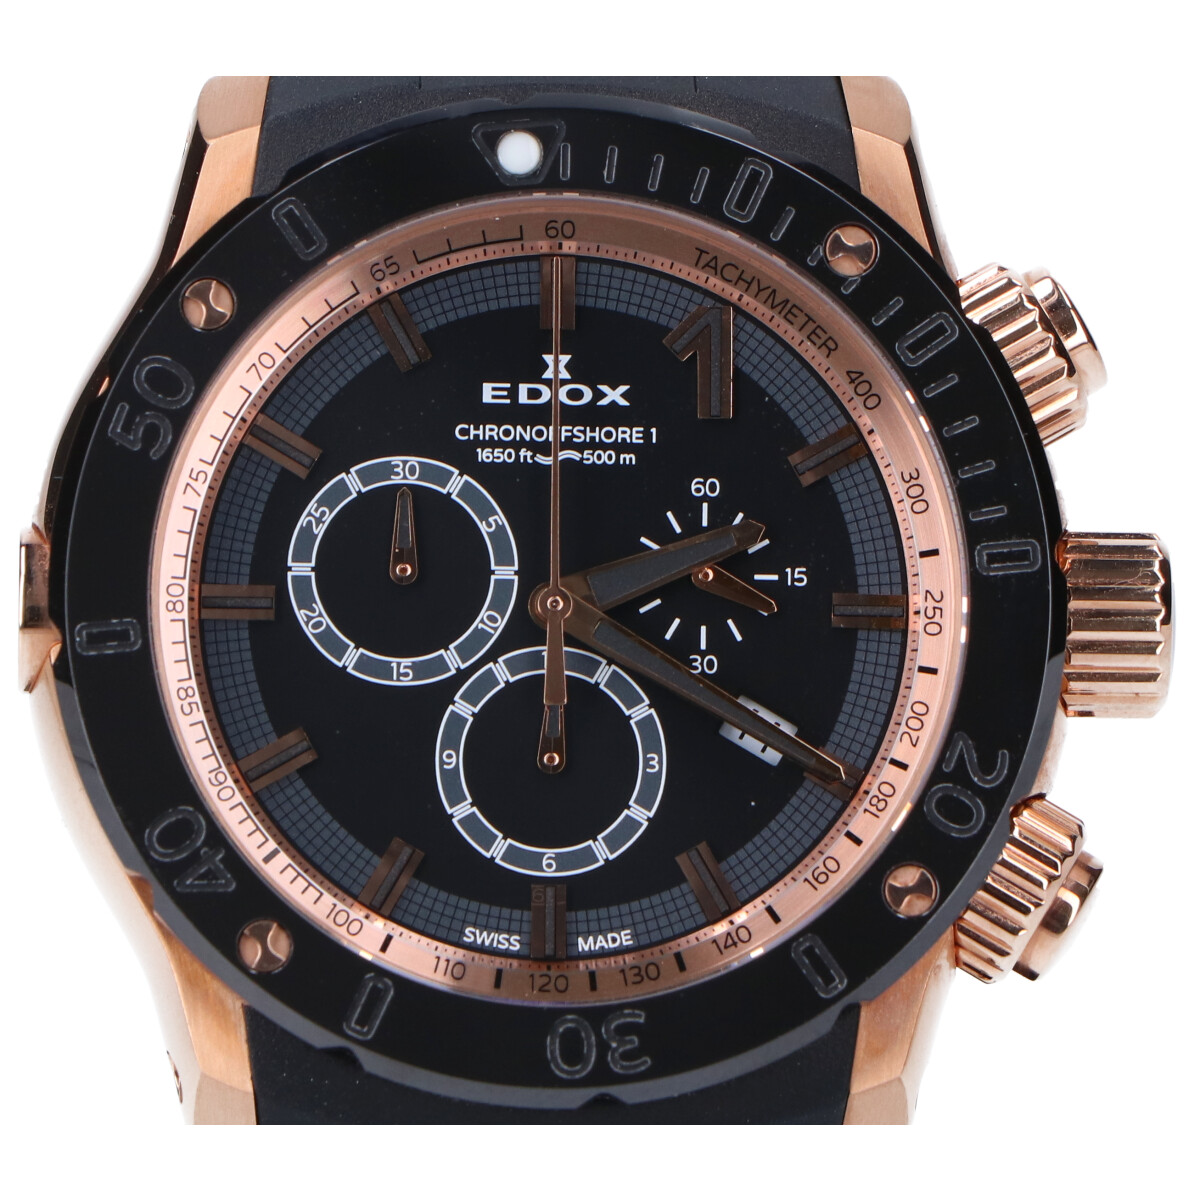 エドックスの10221-37R-NIR クロノオフショア1 クロノグラフ クォーツ時計の買取実績です。